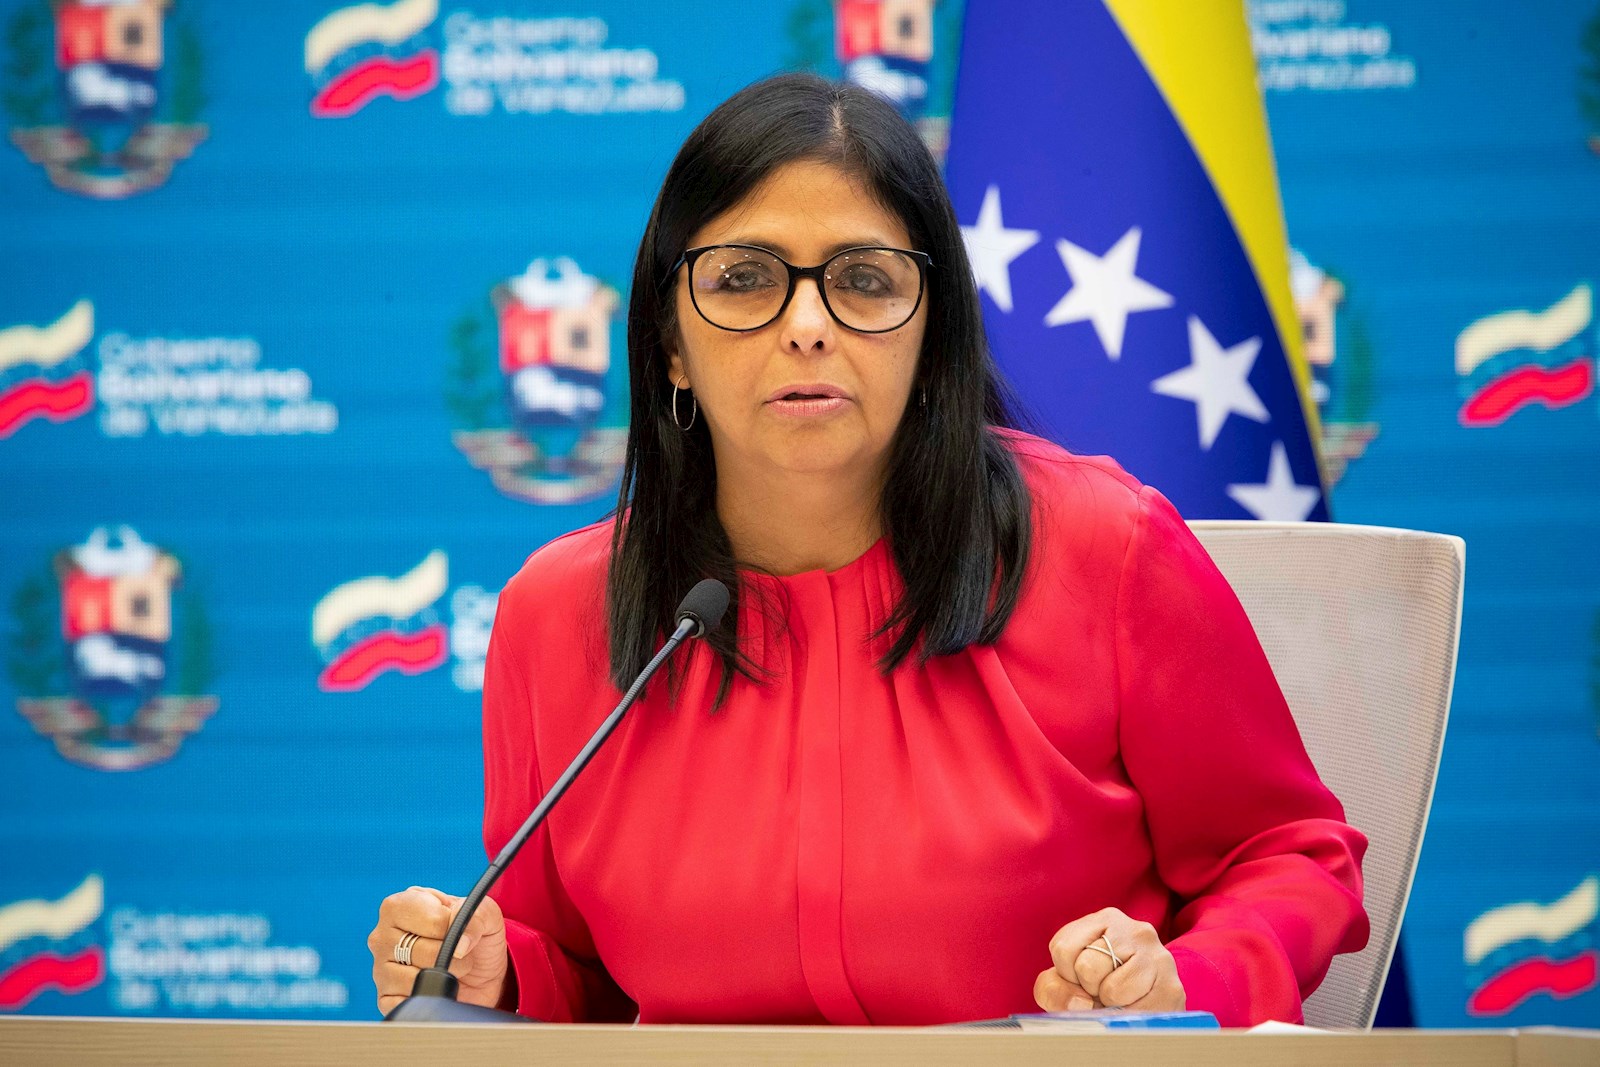 Vicepresidenta Delcy Rodríguez advierte a quienes insistan en especular: “les caerá todo el peso de la ley”